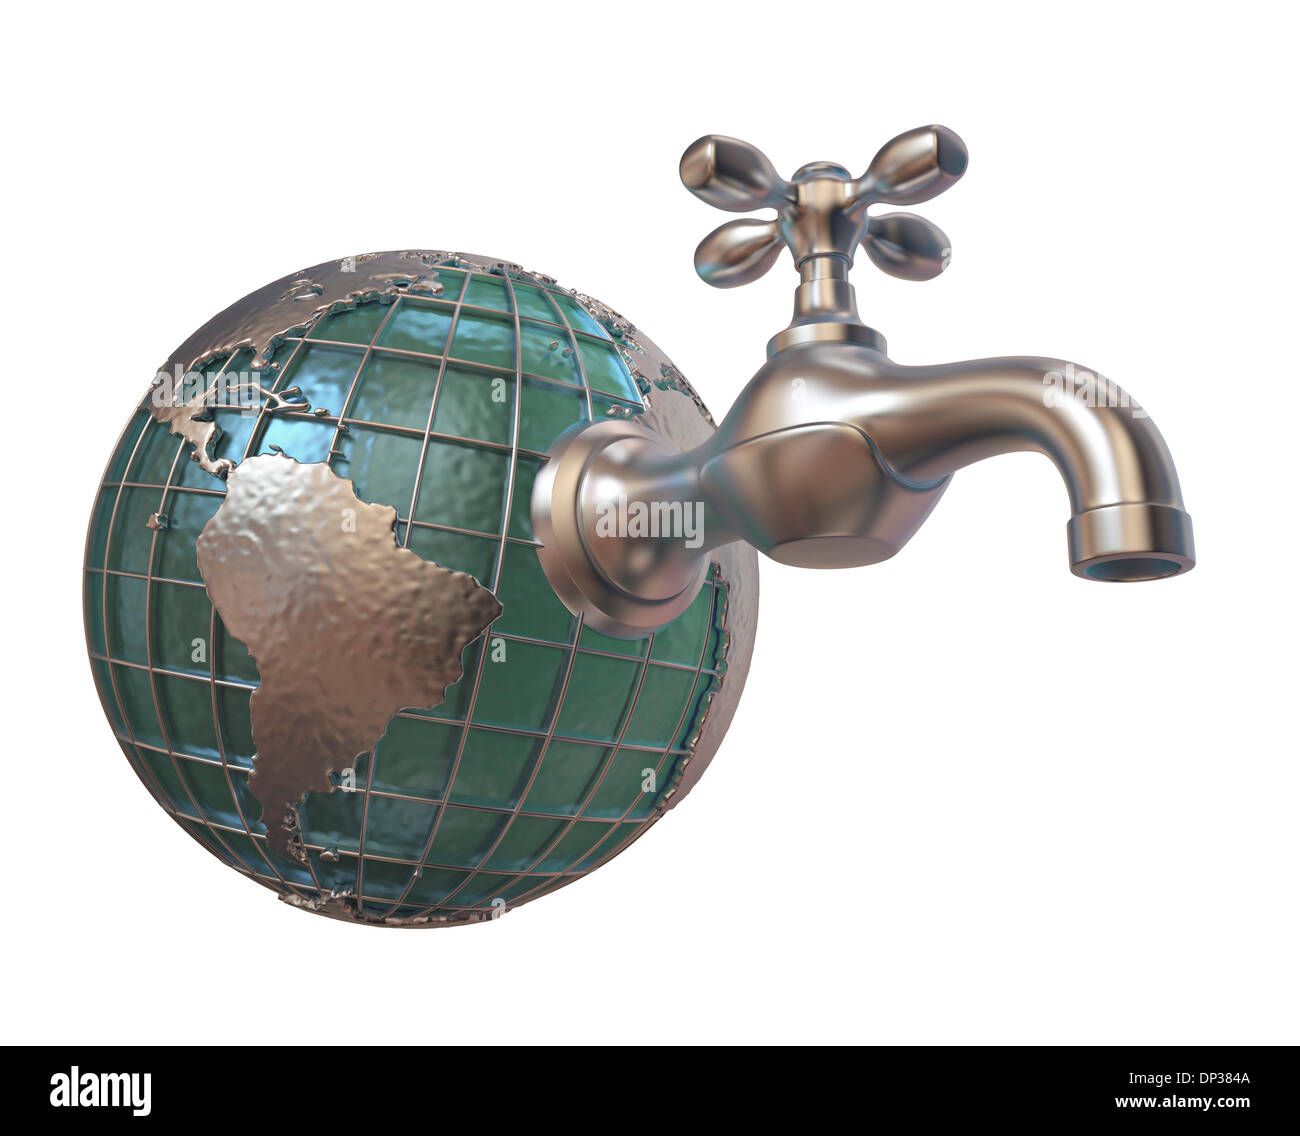 L'approvisionnement en eau, conceptual artwork Banque D'Images